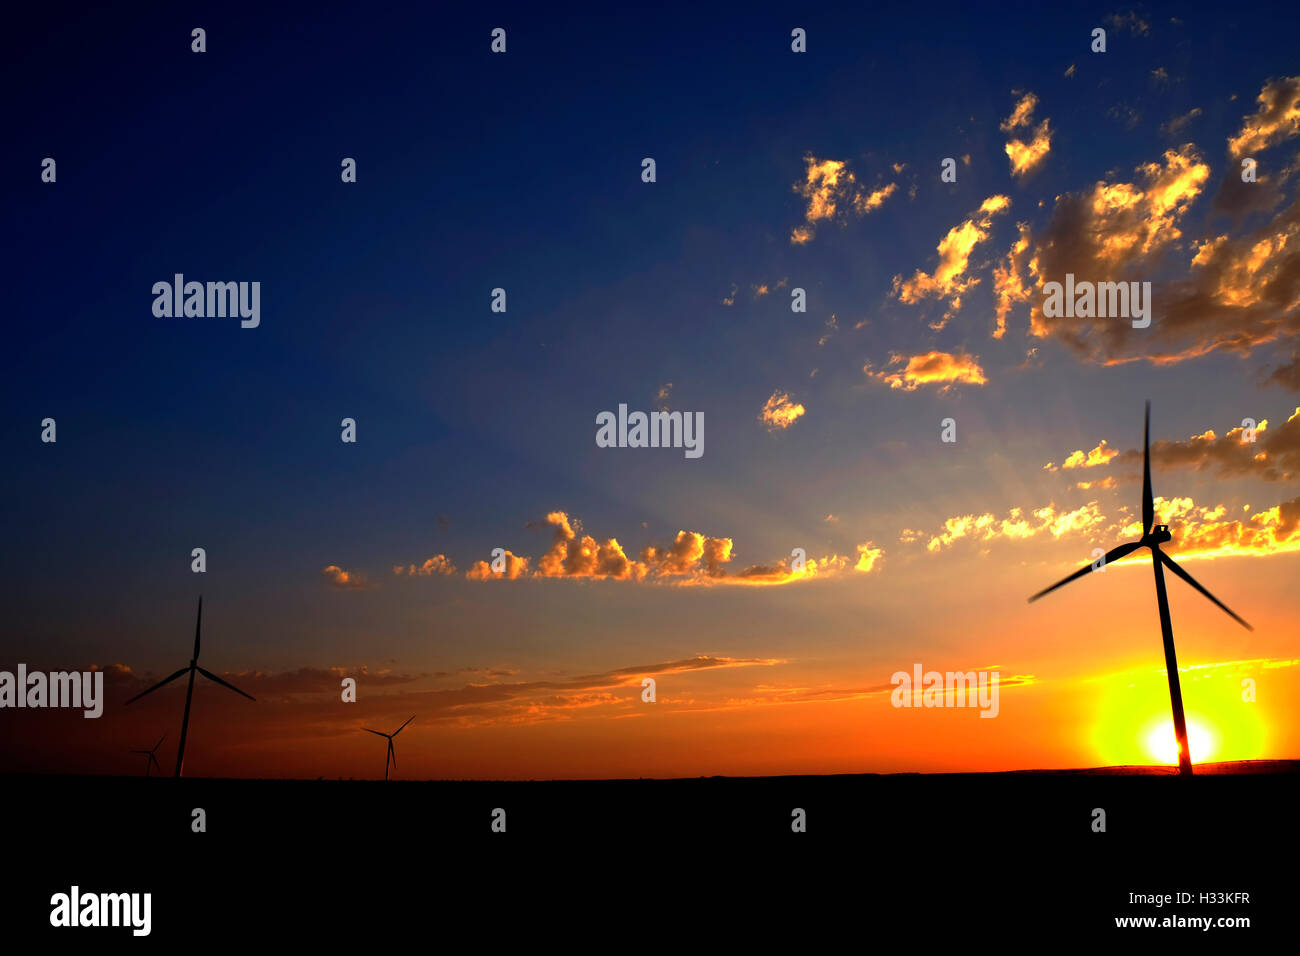 El molino de viento con la puesta de sol y nubes generando electricidad y energía sostenible Foto de stock